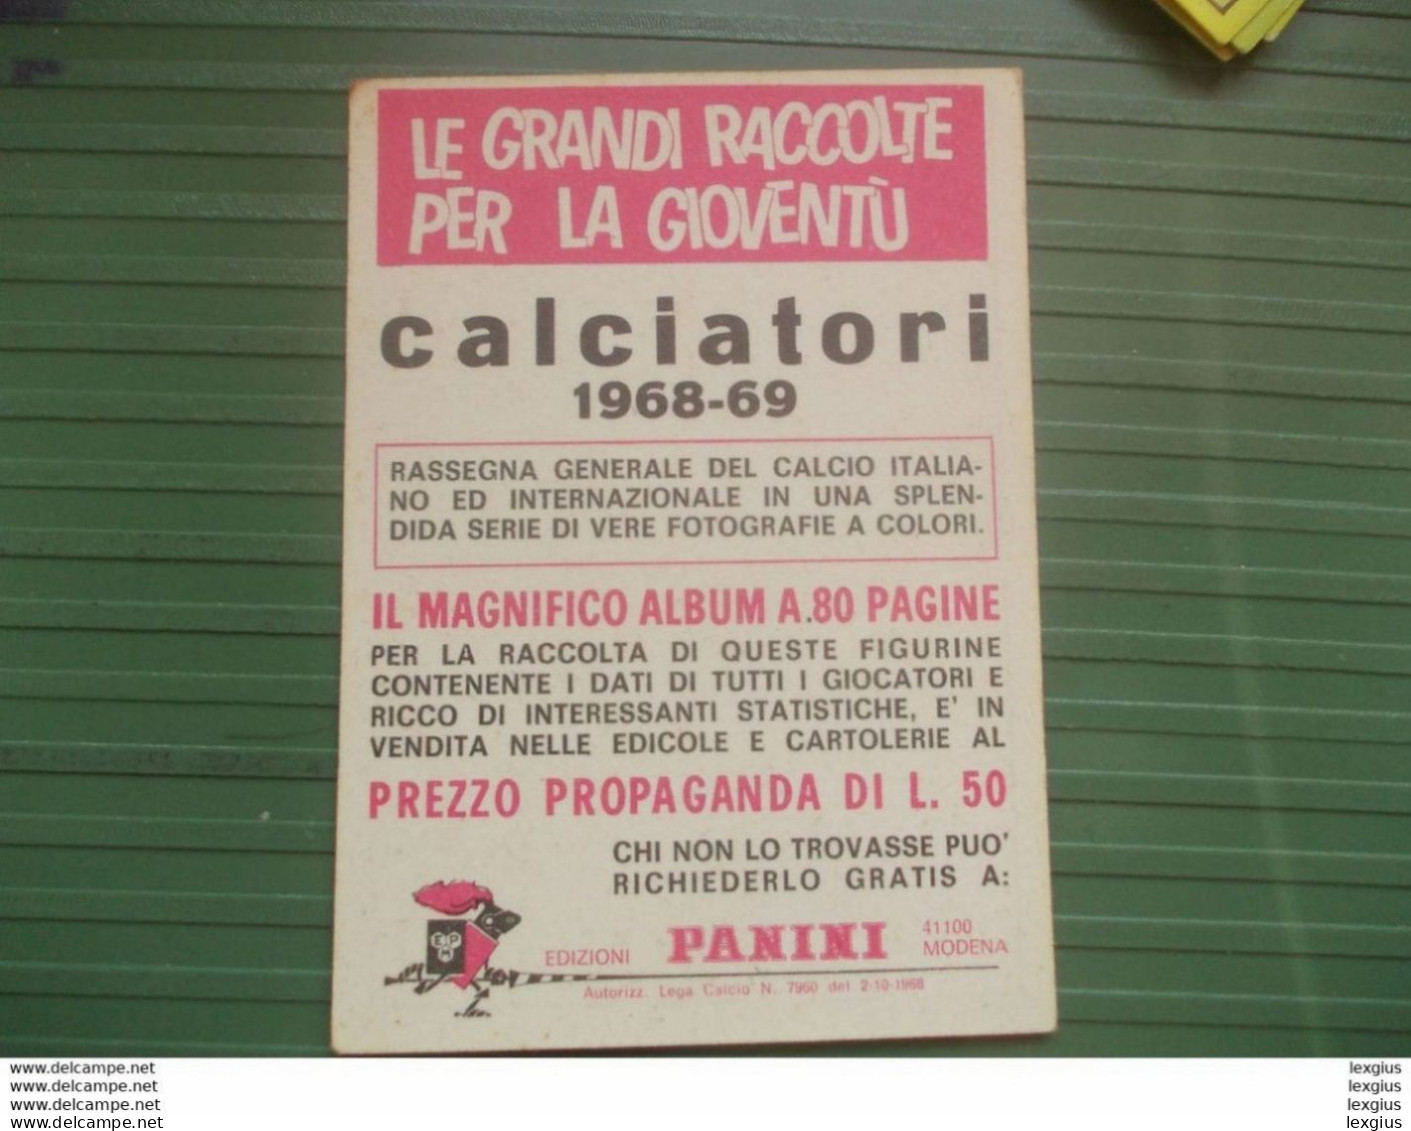 RIVERA STORIA DELLE COPPE ALBUM FIGURINE CALCIATORI PANINI 1968 69 ORIGINAL UNUSED STICKER (sd) - Italian Edition